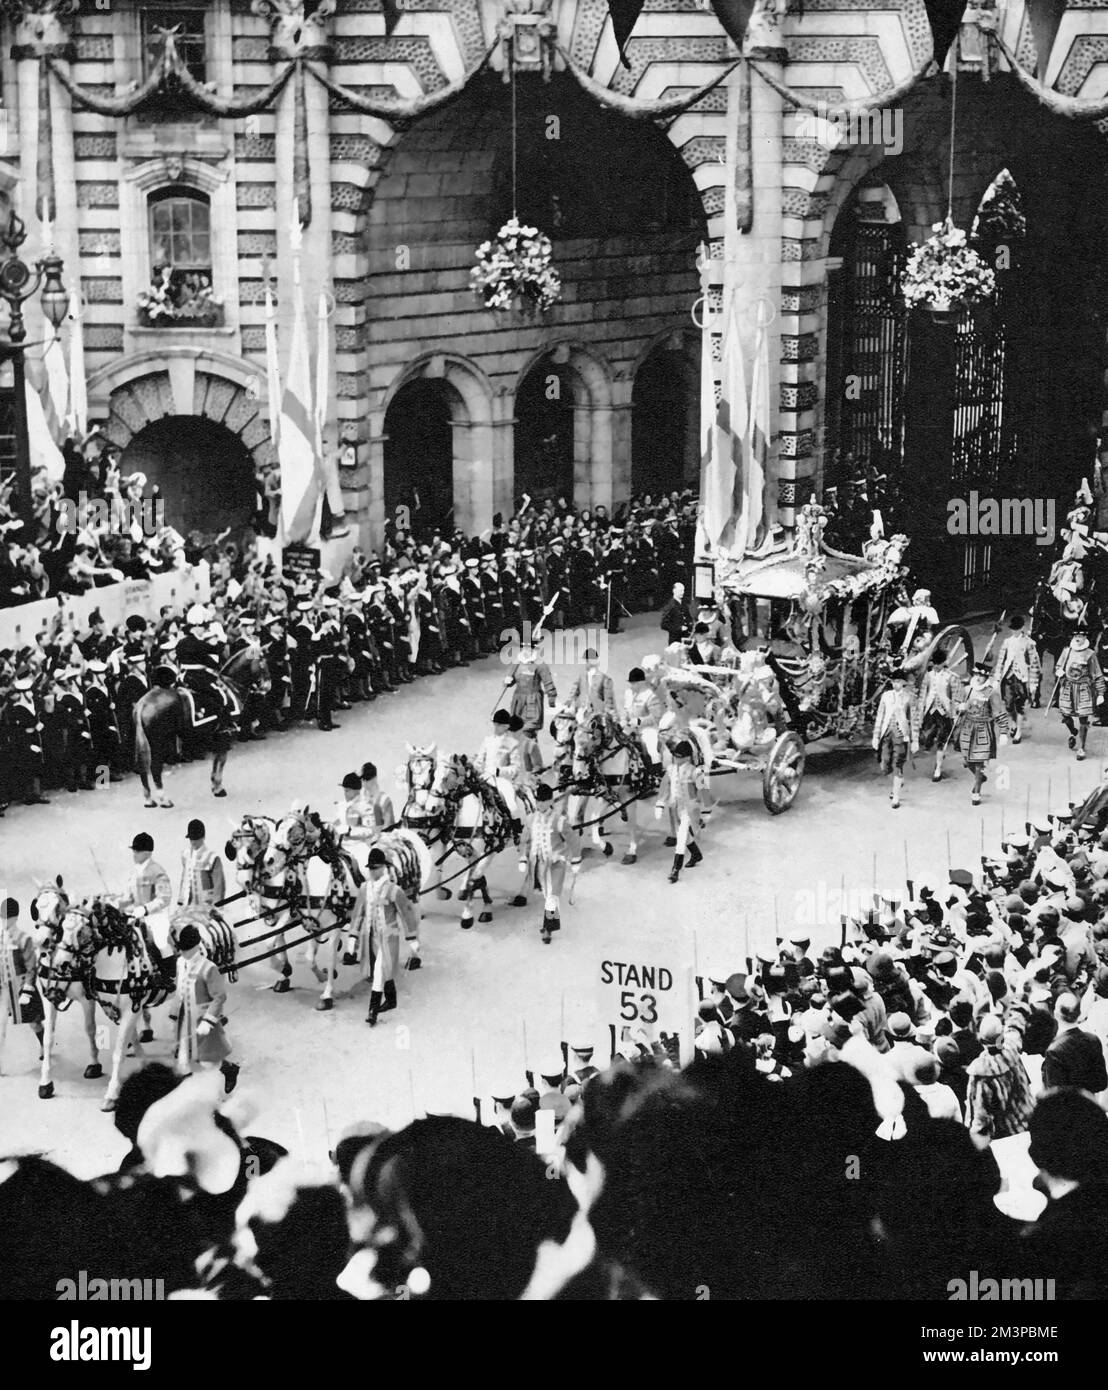 L'entraîneur de l'État d'or passant sous l'Arche de l'Amirauté pendant la procession du couronnement de sa Majesté le roi George VI (1895-1952), 1937. Le couronnement de George VI a eu lieu le 12th mai 1937 à l'abbaye de Westminster, date prévue auparavant pour le couronnement de son frère Edward VIII. Banque D'Images